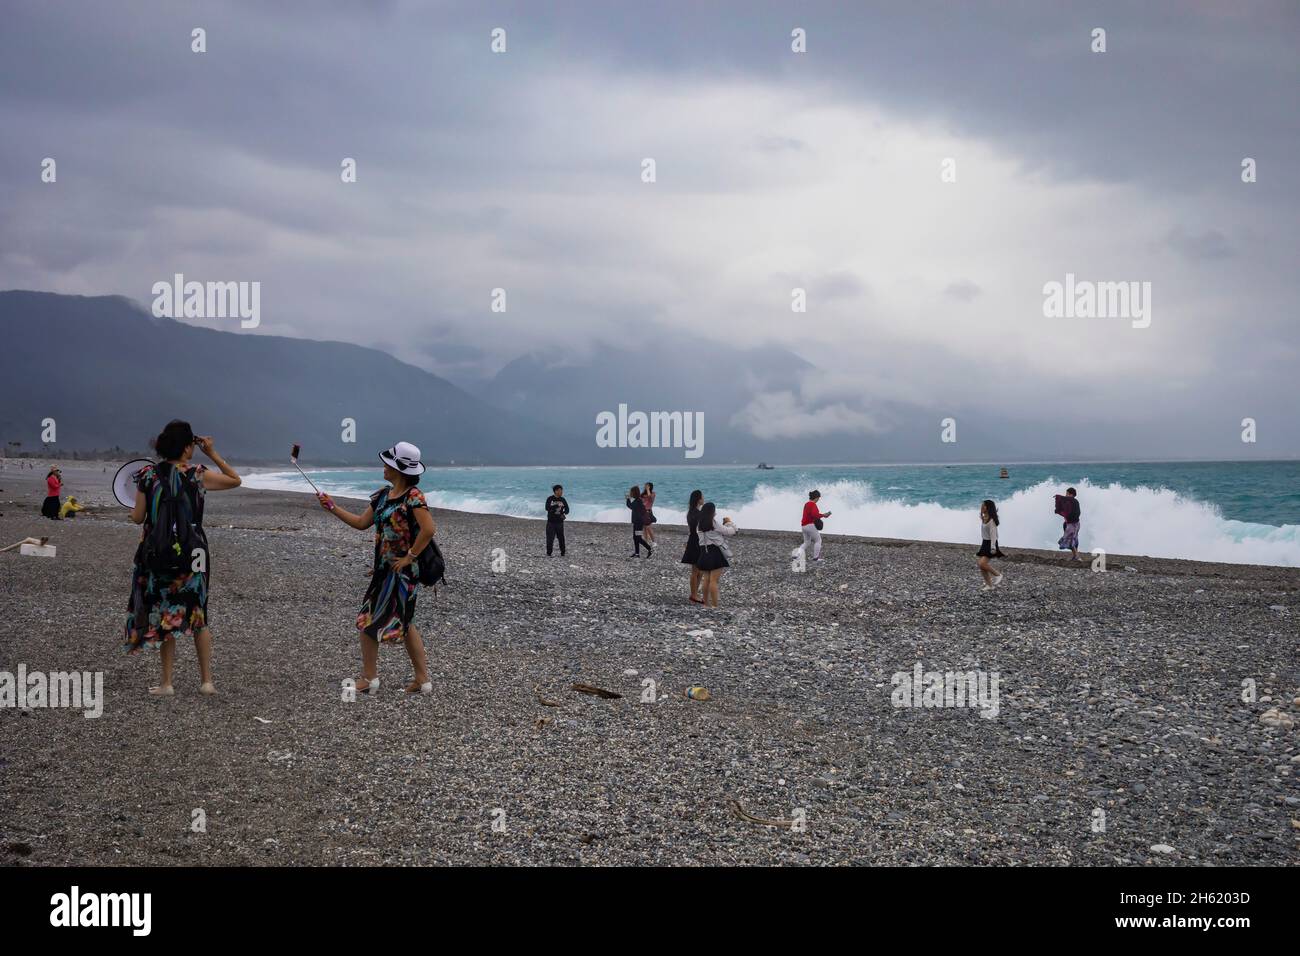 les touristes prennent des photos sur la plage rocheuse de loisirs scéniques Banque D'Images